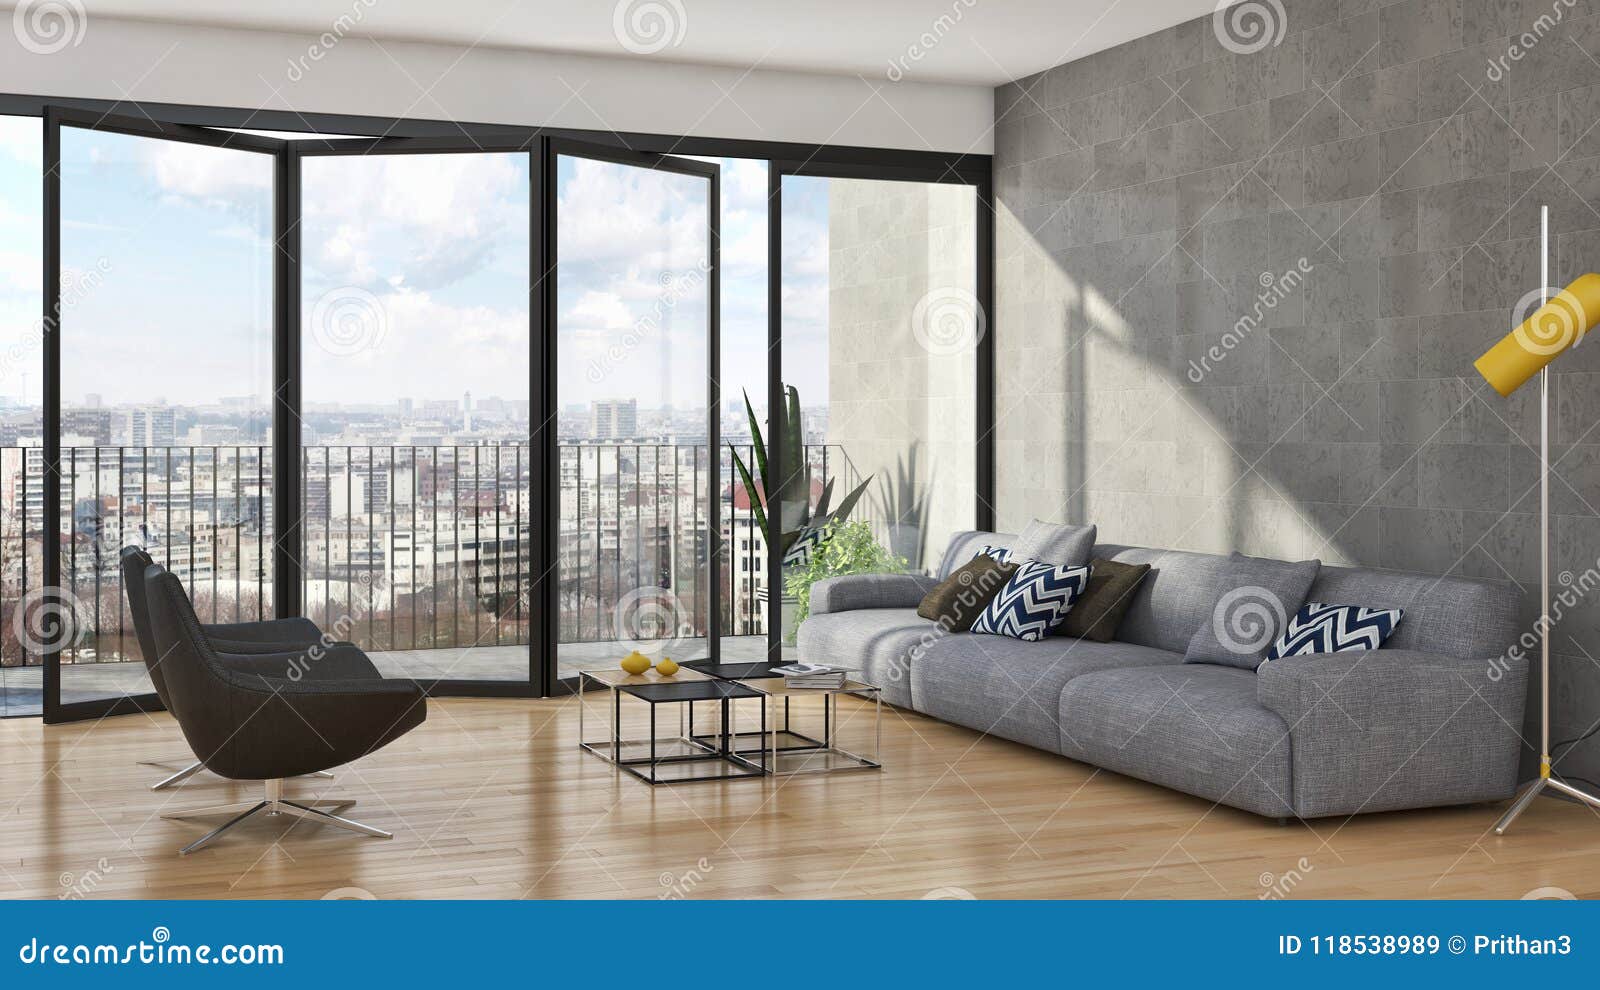 large luxury modern bright interiors apartment living room illus